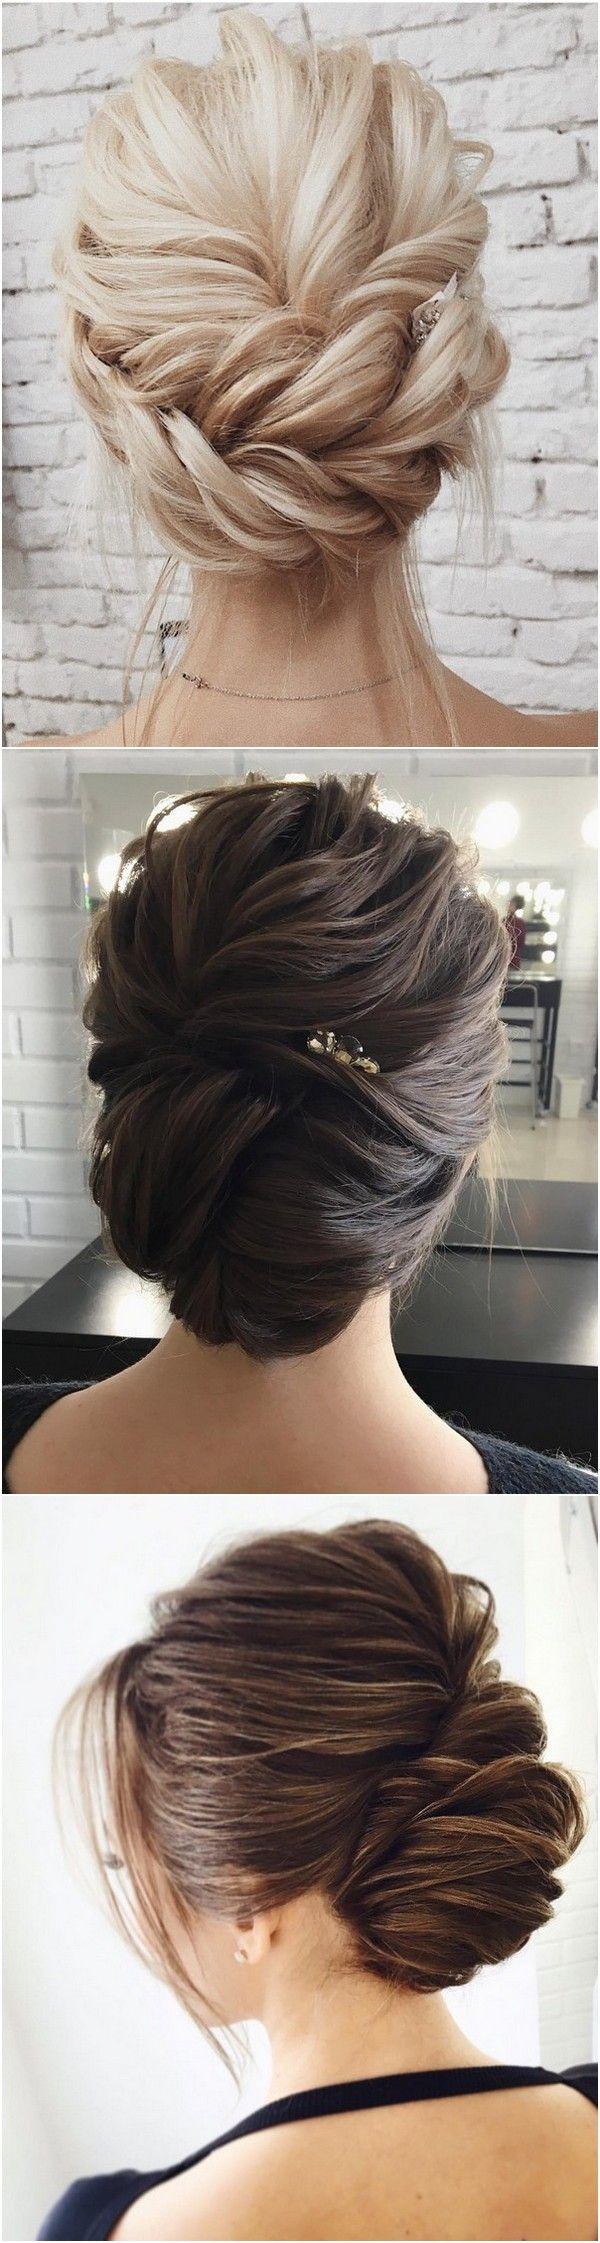 زفاف - 10 Amazing Updo Wedding Hairstyles From Lena Bogucharskaya